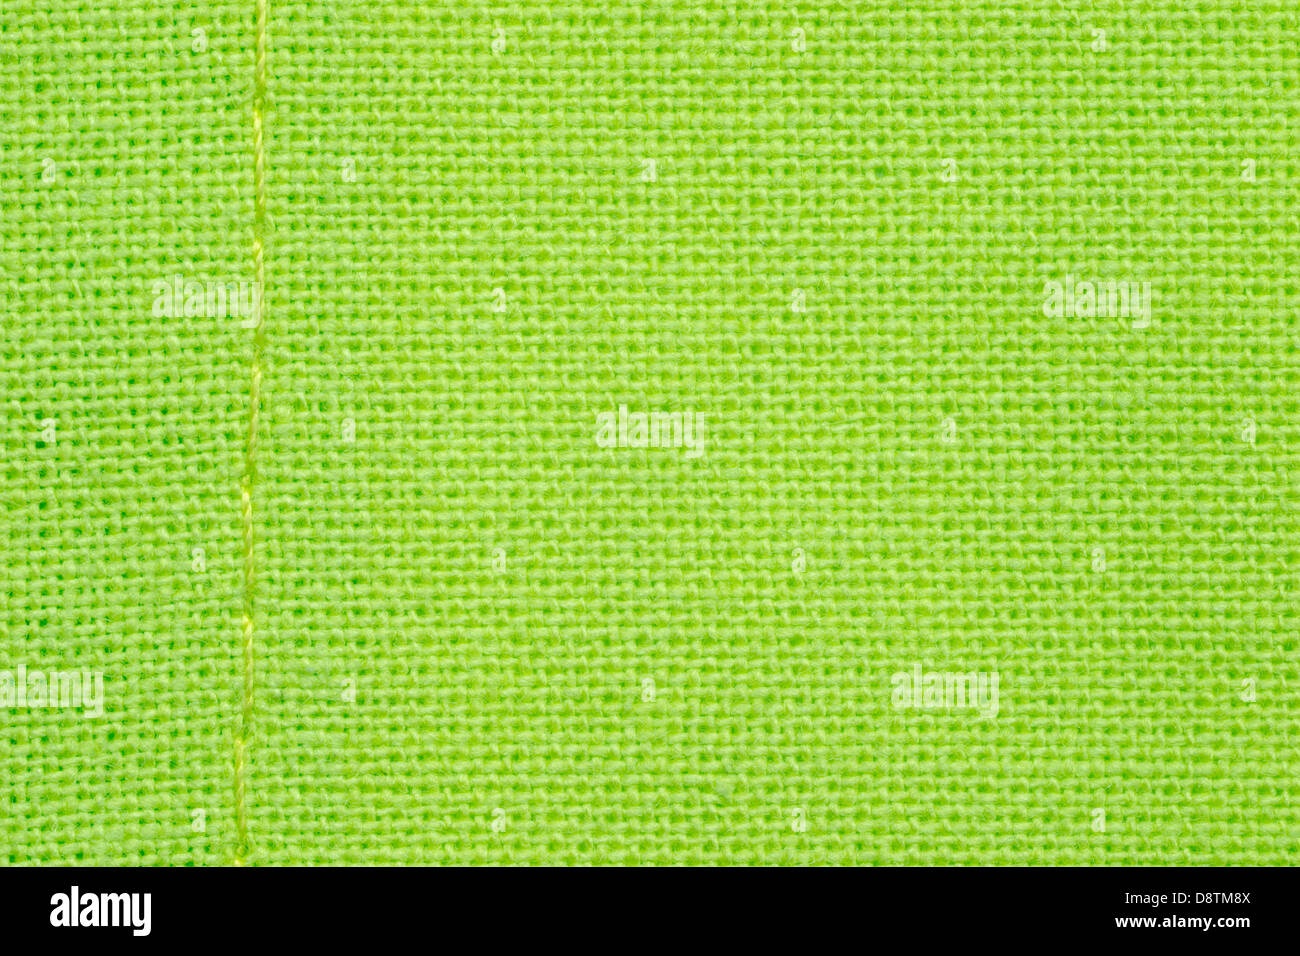 Grüner Hintergrund oder Gitter Muster gewebt Stoff Stockfoto